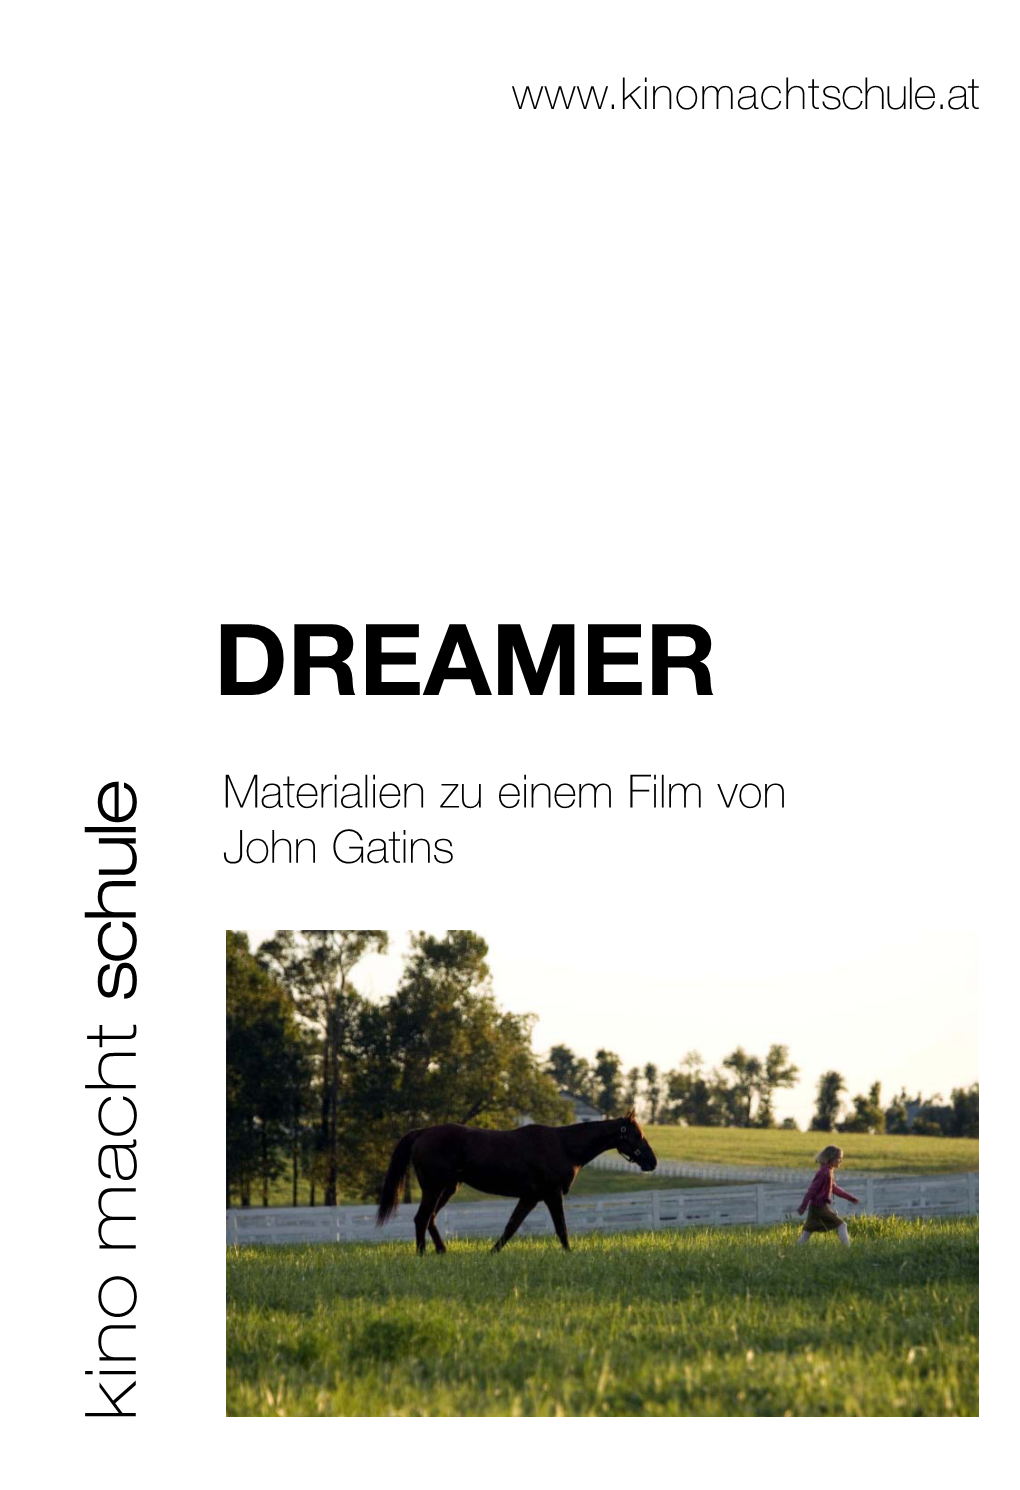 DREAMER John Gatins Materialien Zueinemfilmvon Schule.At Kino Macht Schule